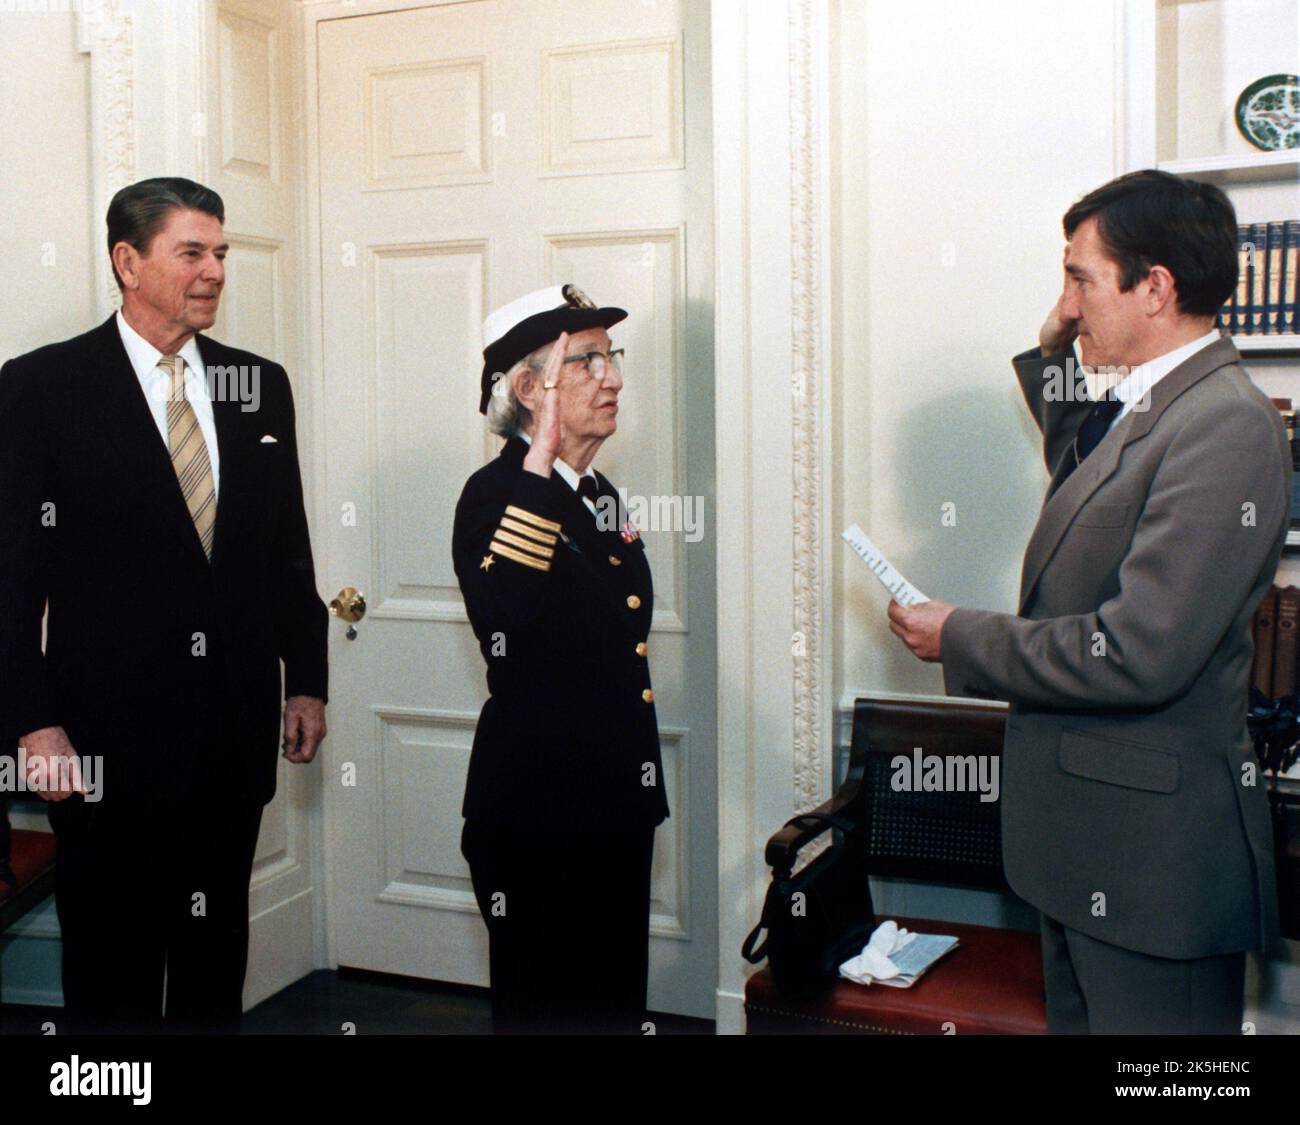 Der Navy-Sekretär John Lehman, rechts, befördert Capt. Grace Hopper in einer Zeremonie im Weißen Haus zum commodore. Präsident Ronald Reagan befindet sich auf der linken Seite. Hopper wird 1983 zum commodore befördert. Grace Brewster Murray Hopper (1906 – 1992) amerikanischer Informatiker, Mathematiker und Rückadmiral der United States Navy. Stockfoto